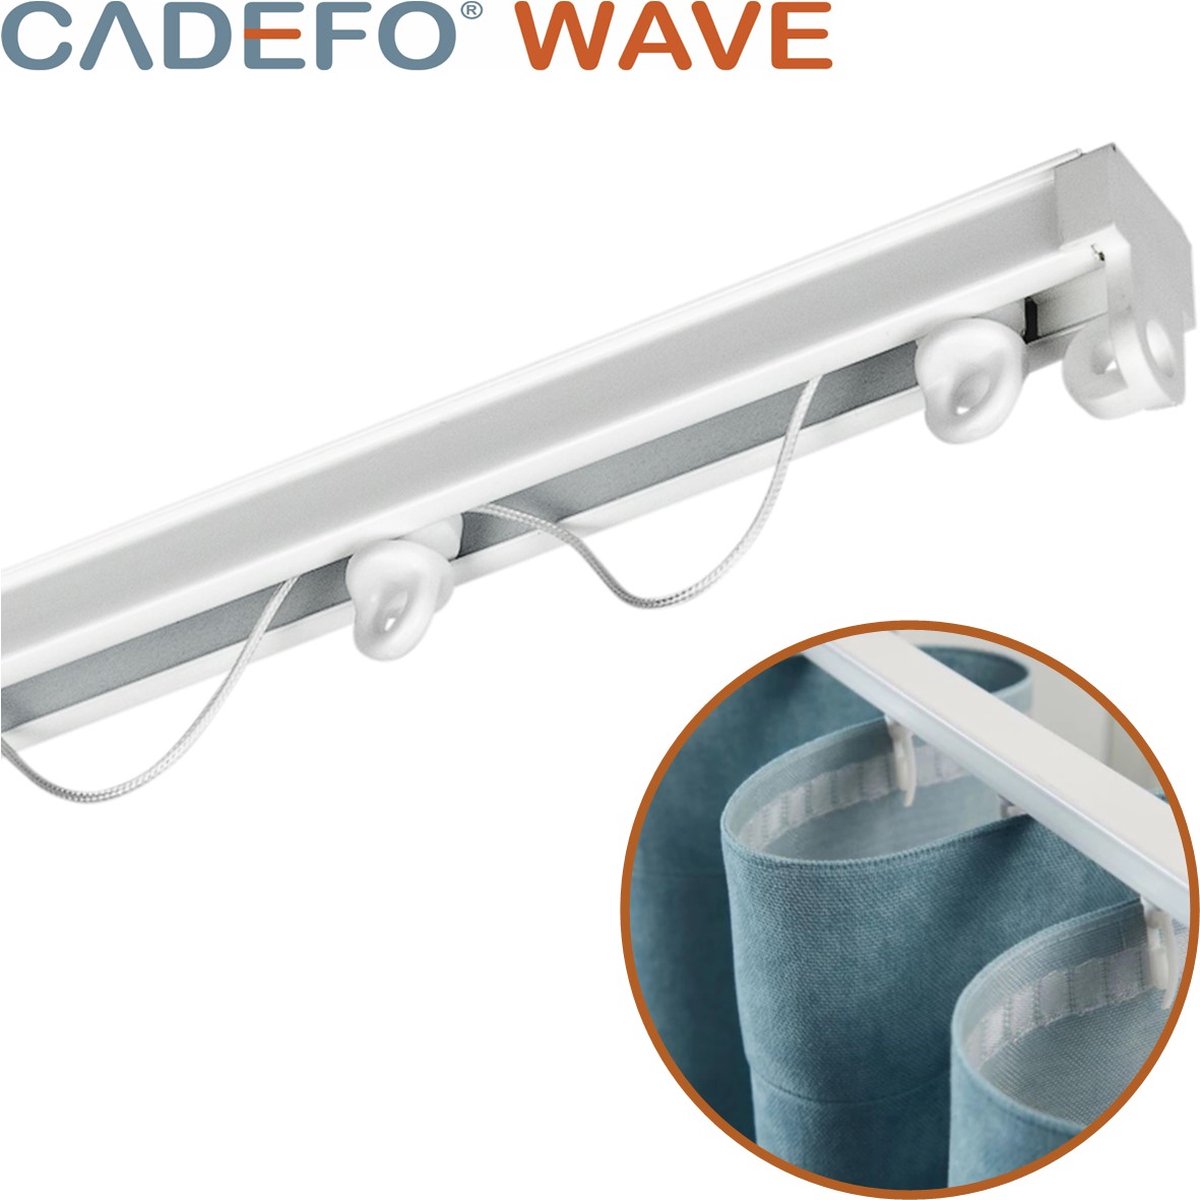 CADEFO WAVE (151 - 200 cm) Gordijnrails - Compleet op maat! - UIT 1 STUK - Leverbaar tot 6 meter - Plafondbevestiging - Lengte 199 cm